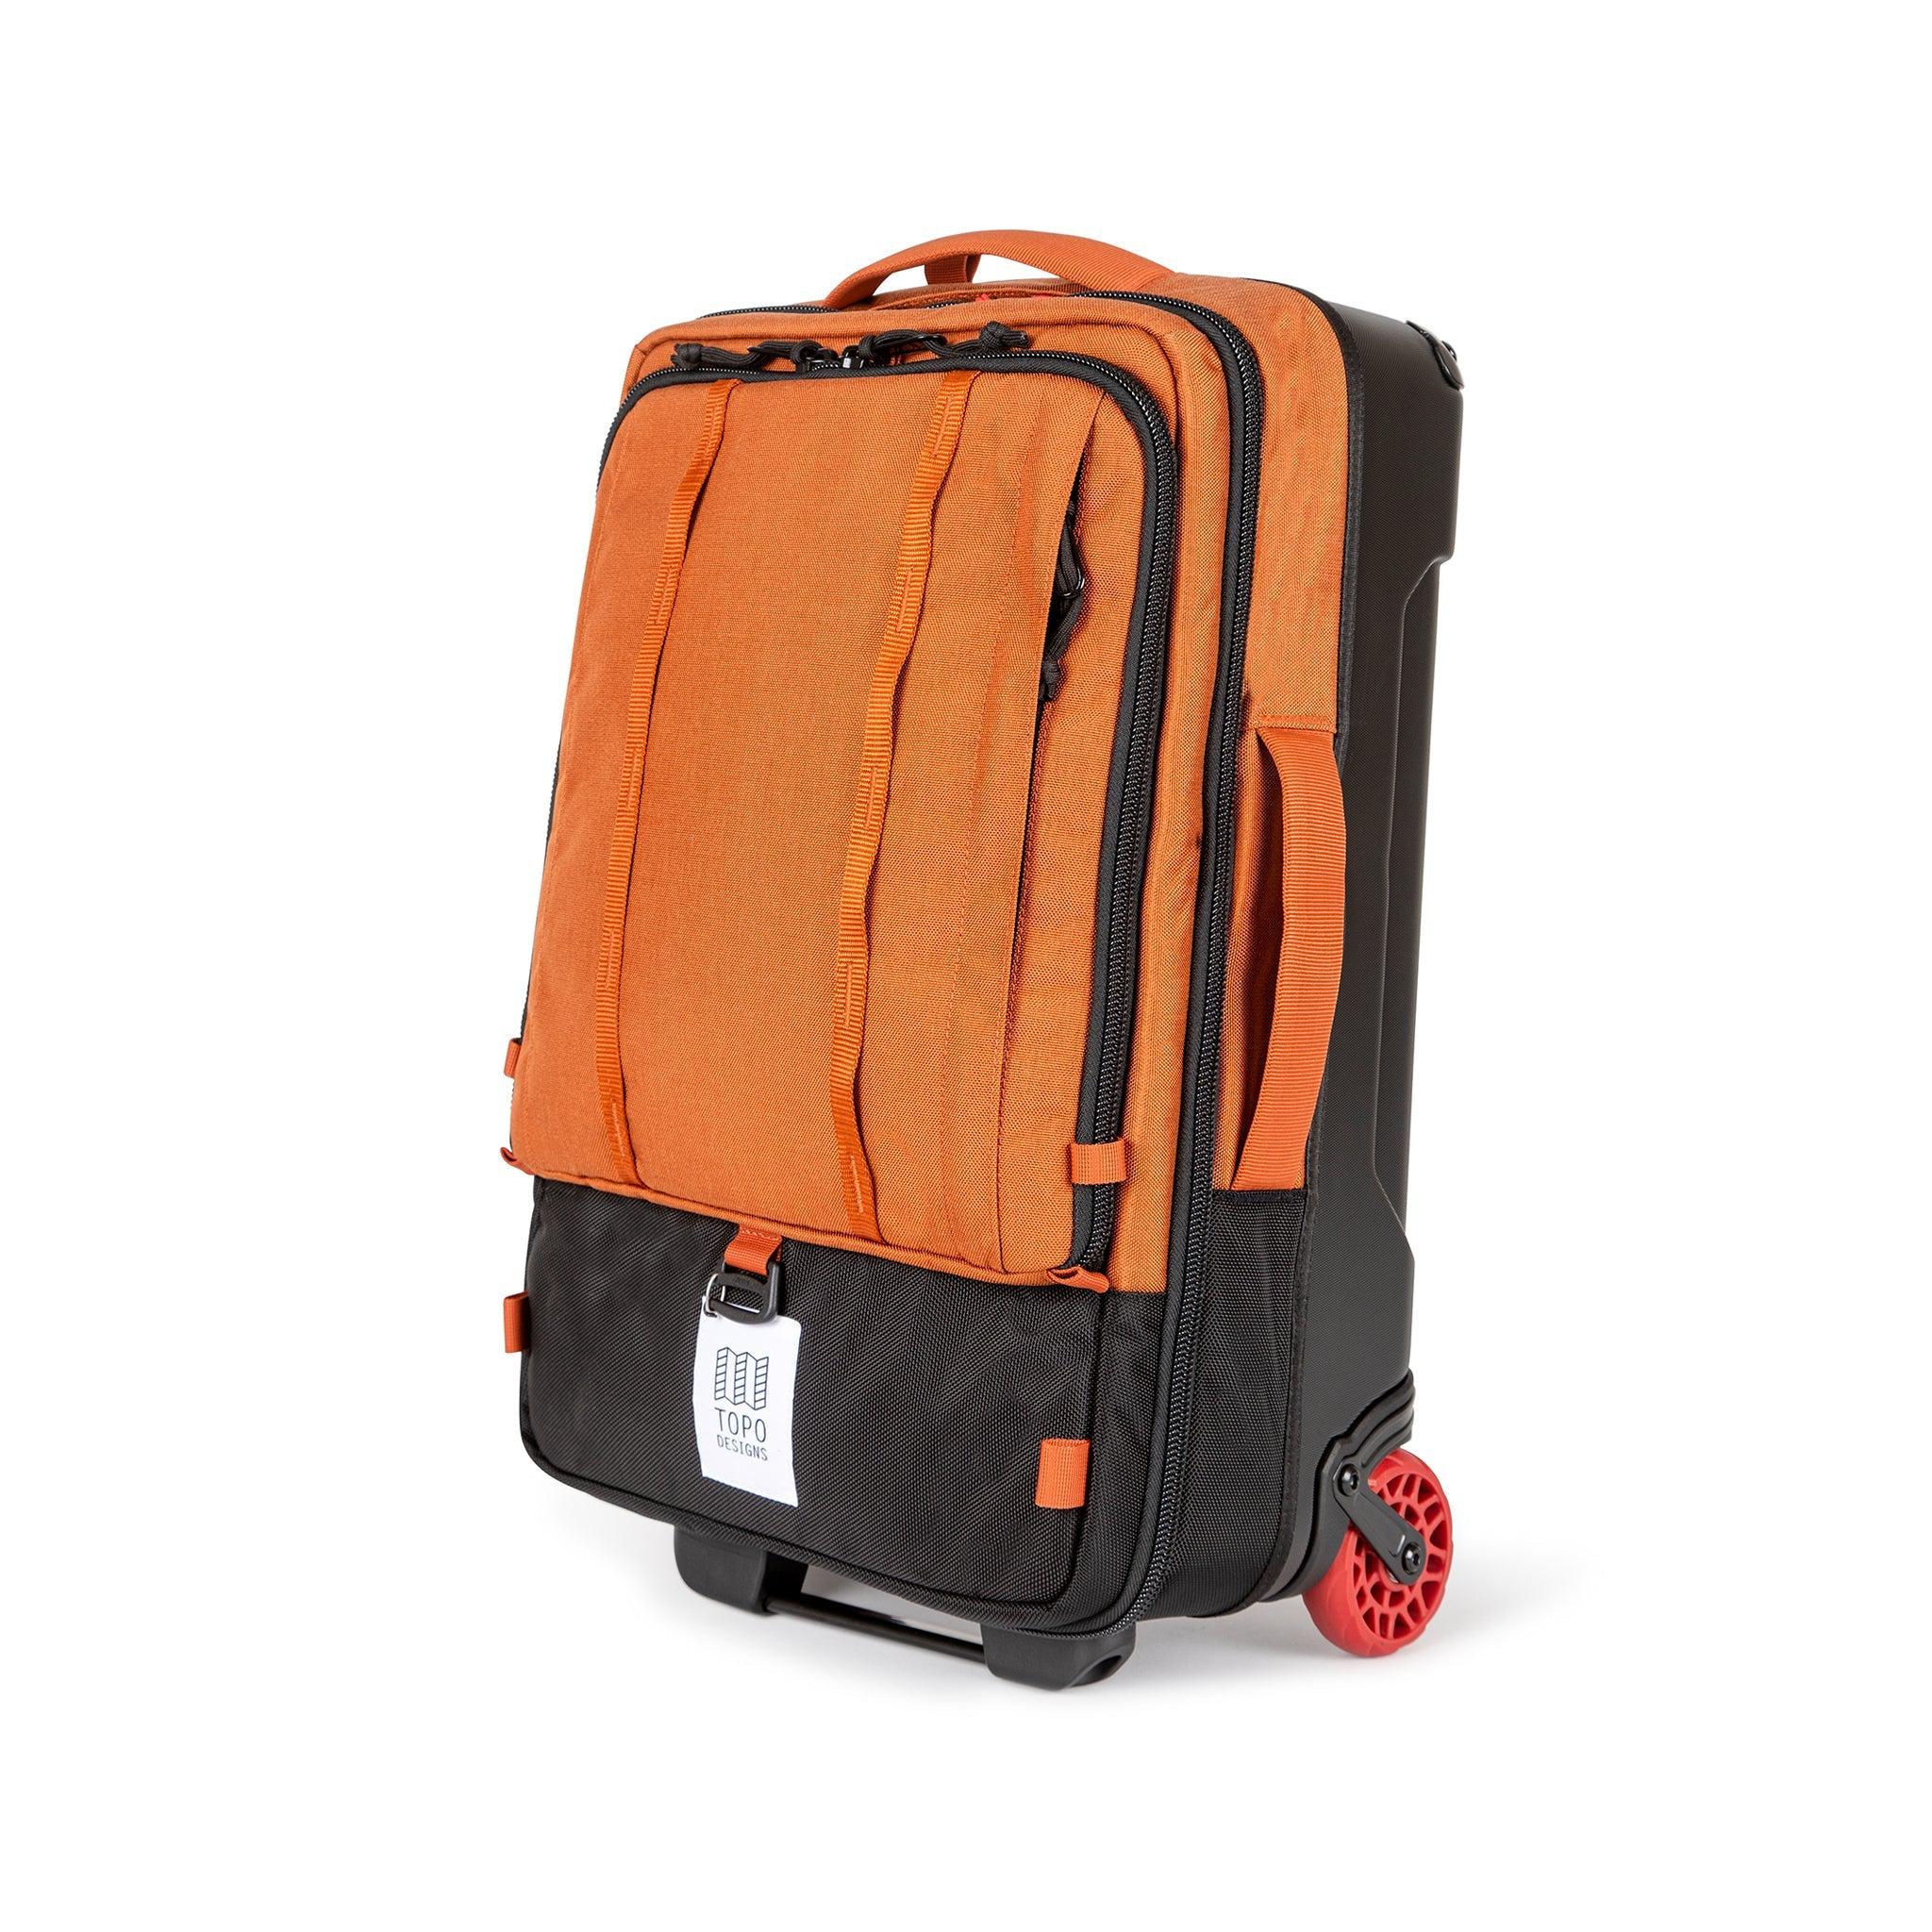 F21-Global-Travel-Bag-Roller-Product-2_2x_1dc4db47-063d-4a84-a889-b7248c8b58a8.jpg